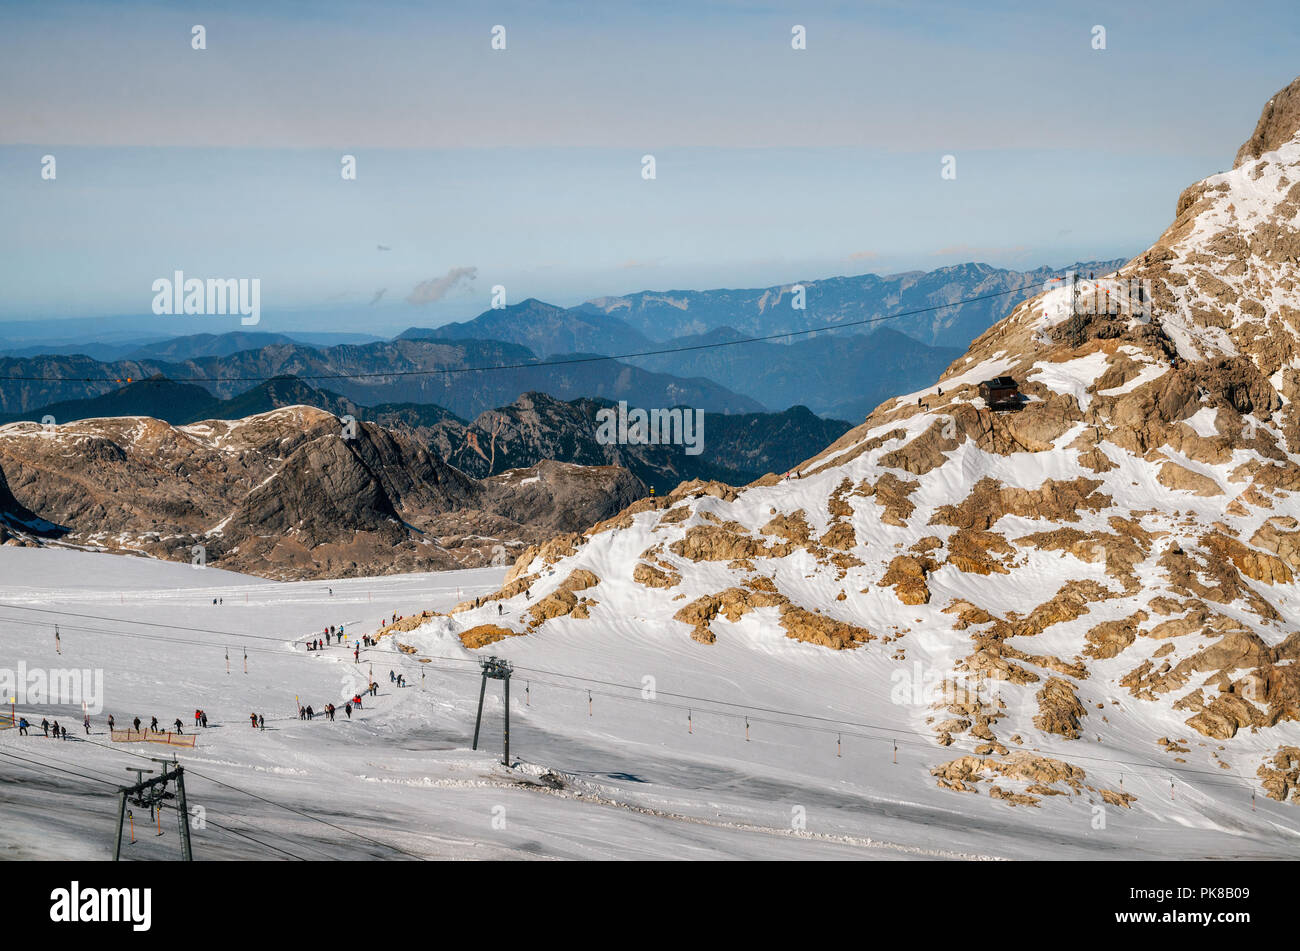 Vista aérea de las laderas de la meseta de Dachstein ski resort con glaciares y montañas en Alpes austríacos. Foto de stock